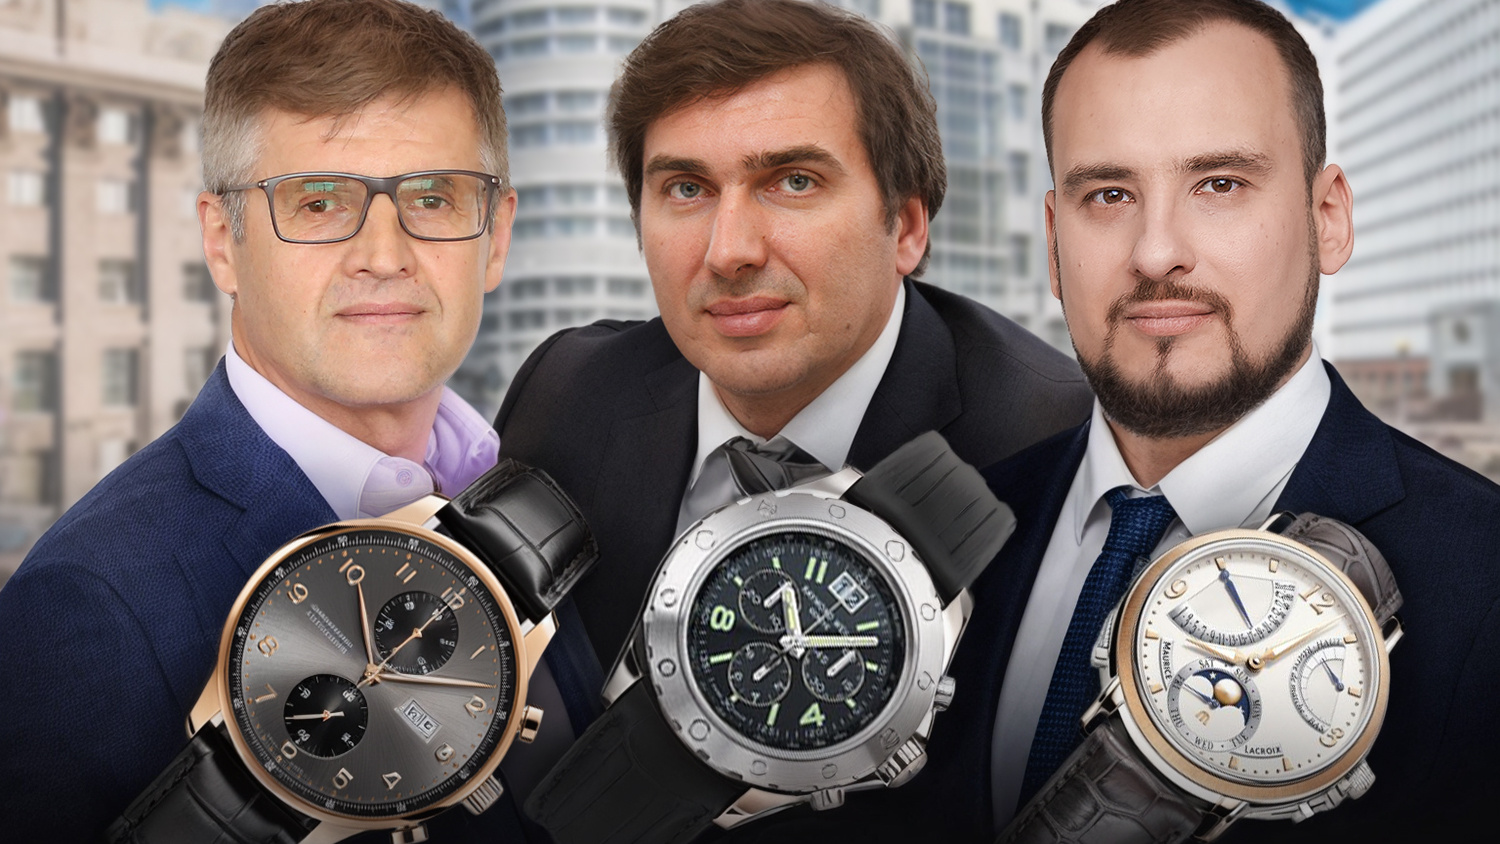 Икона стиля за 2 миллиона. Какие часы носят министр здравоохранения и новосибирские депутаты